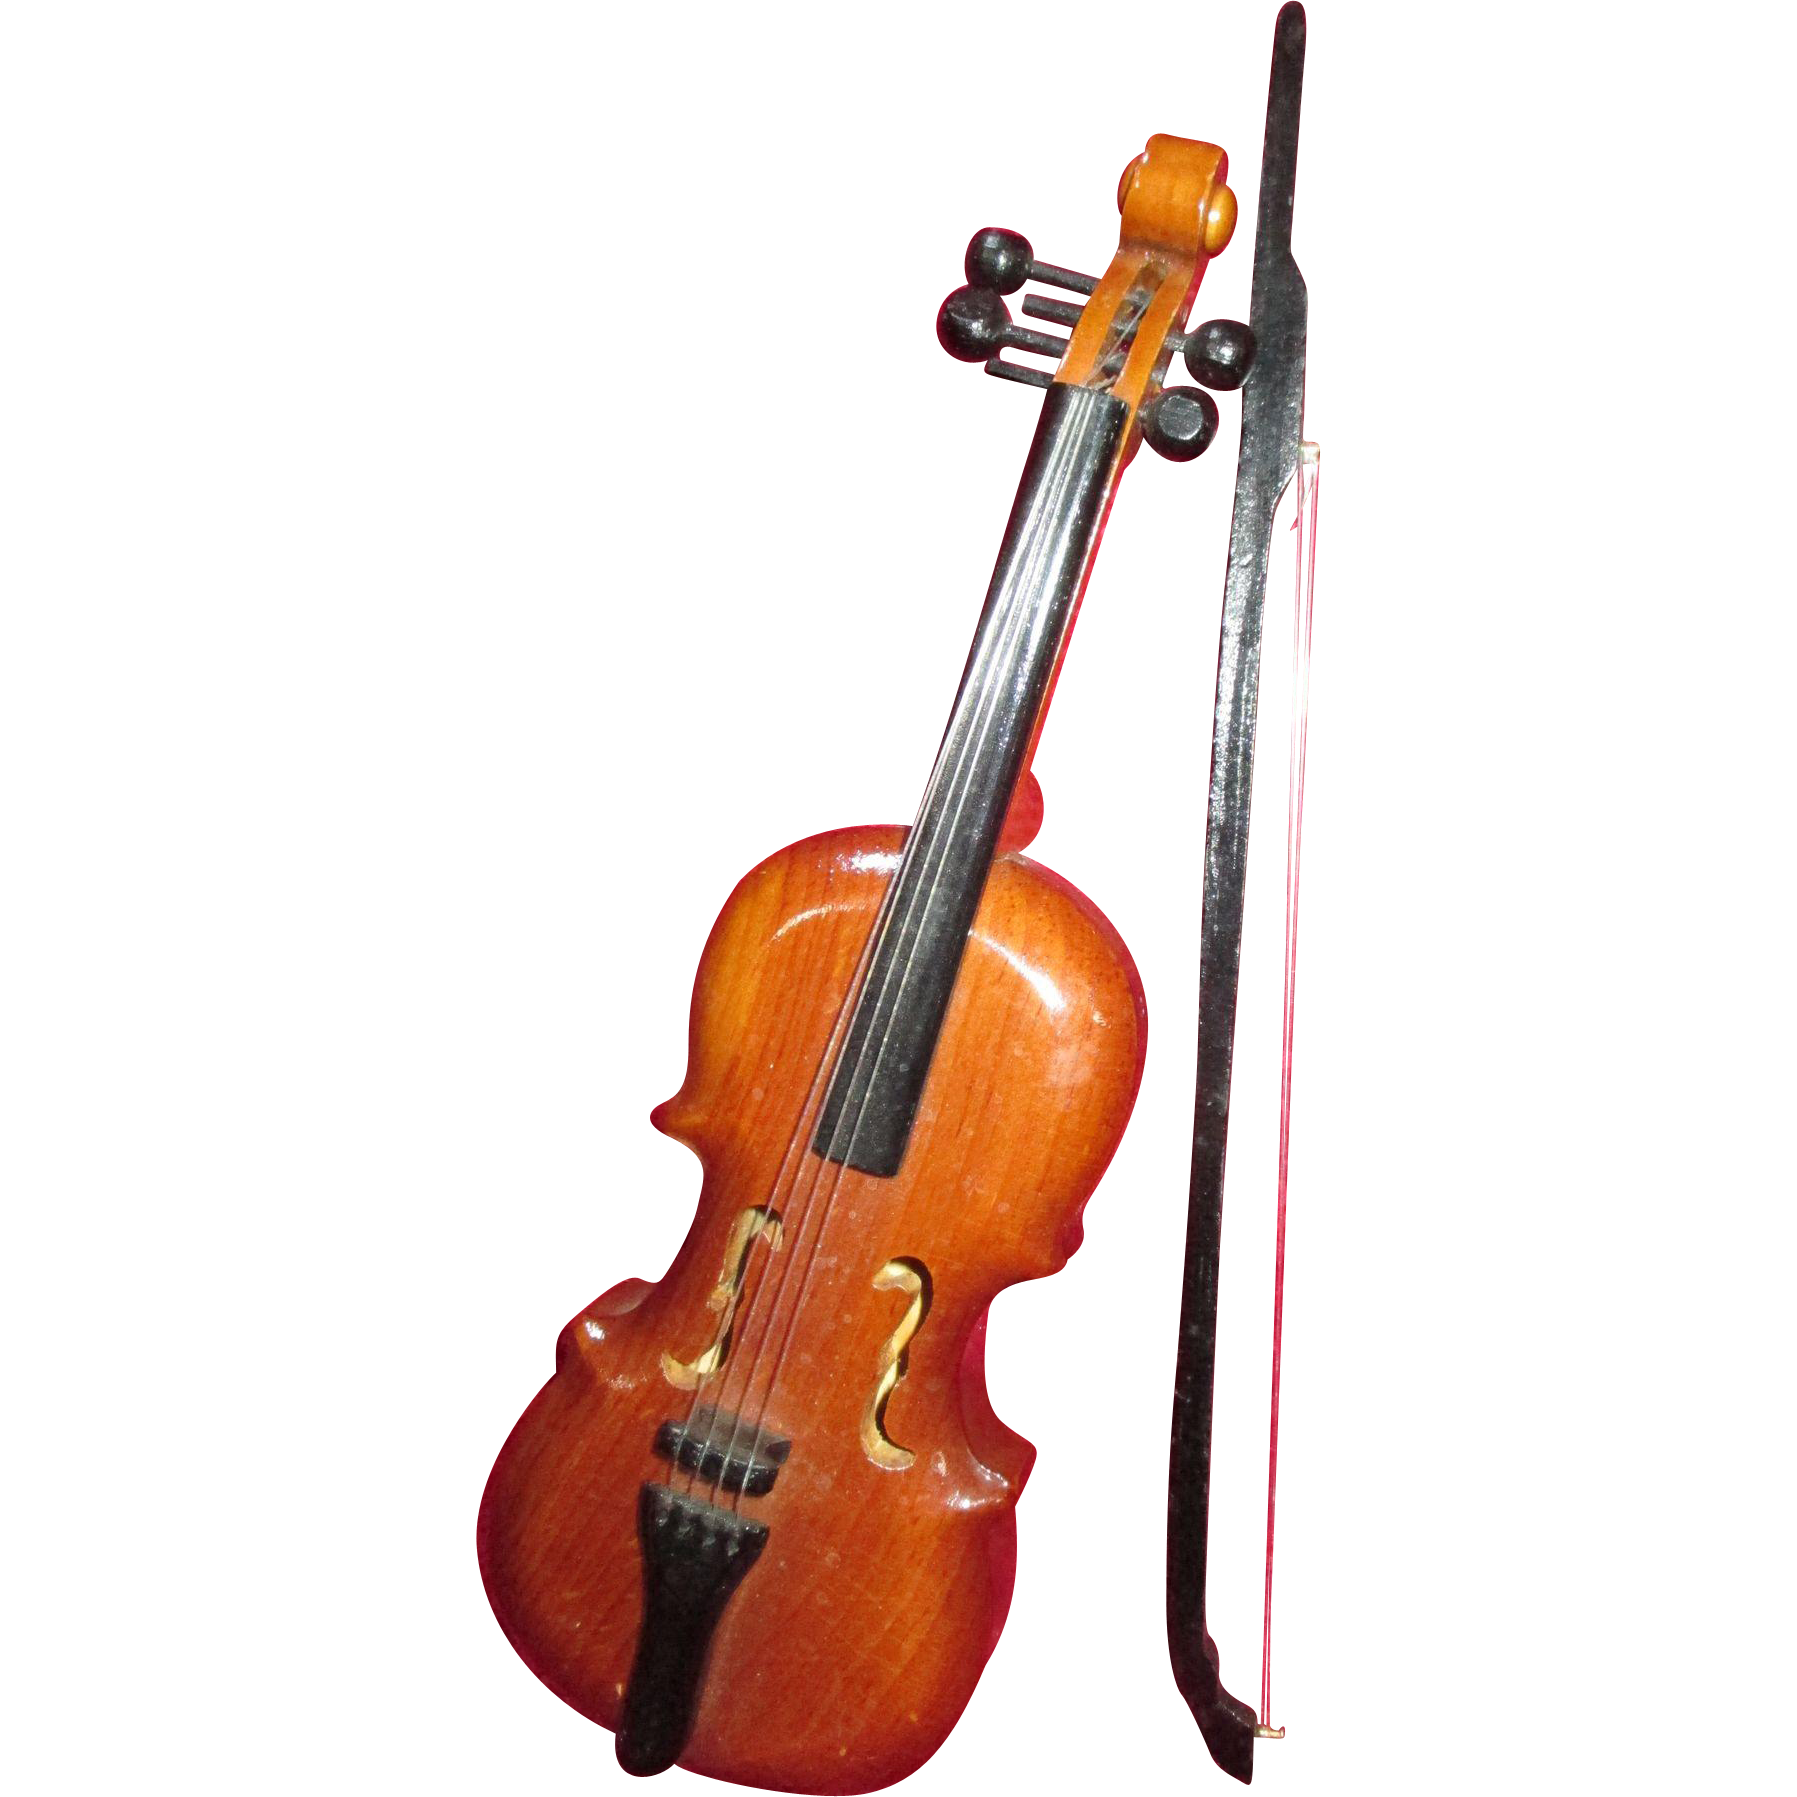 Imagem grátis do violoncello violoncello